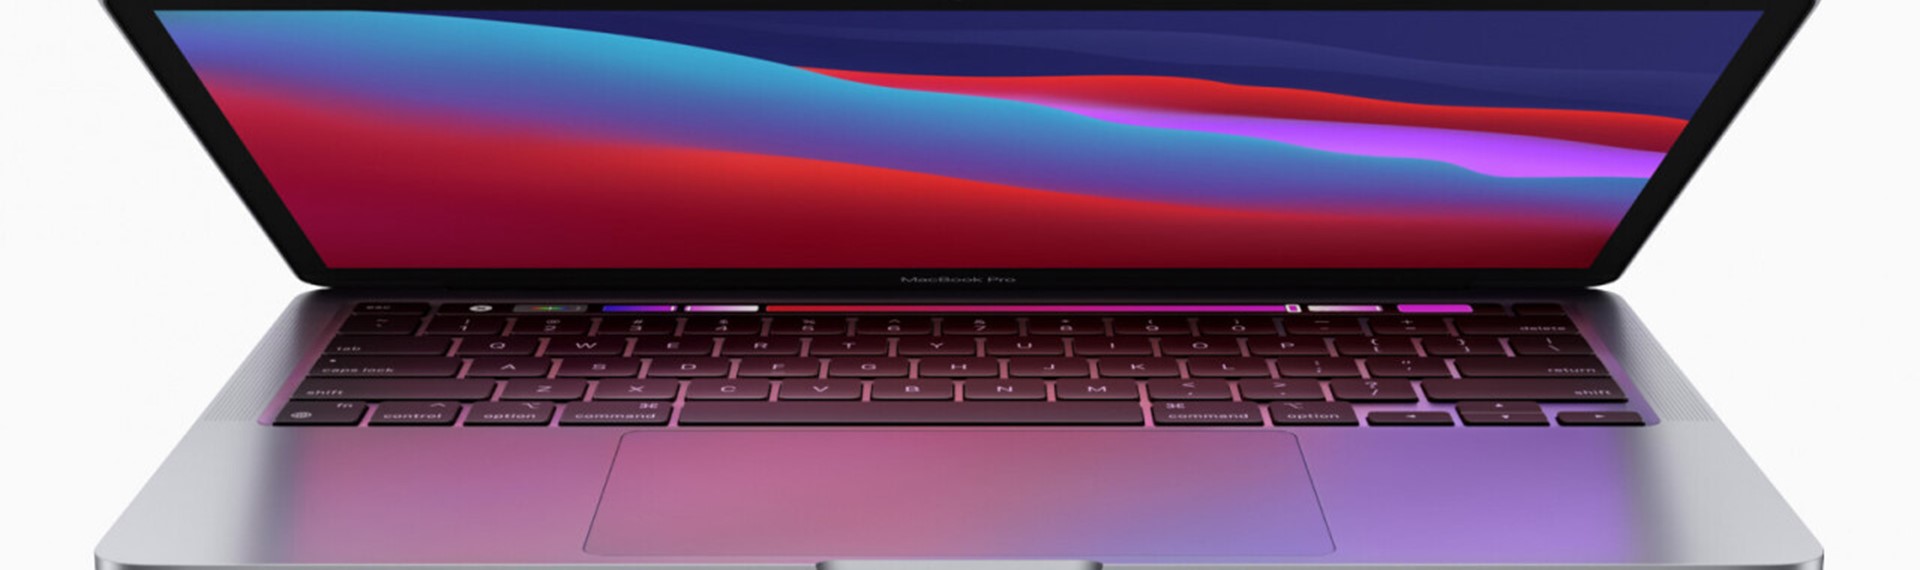 MacBook - Danmarks bedste service | Teleboxen.dk